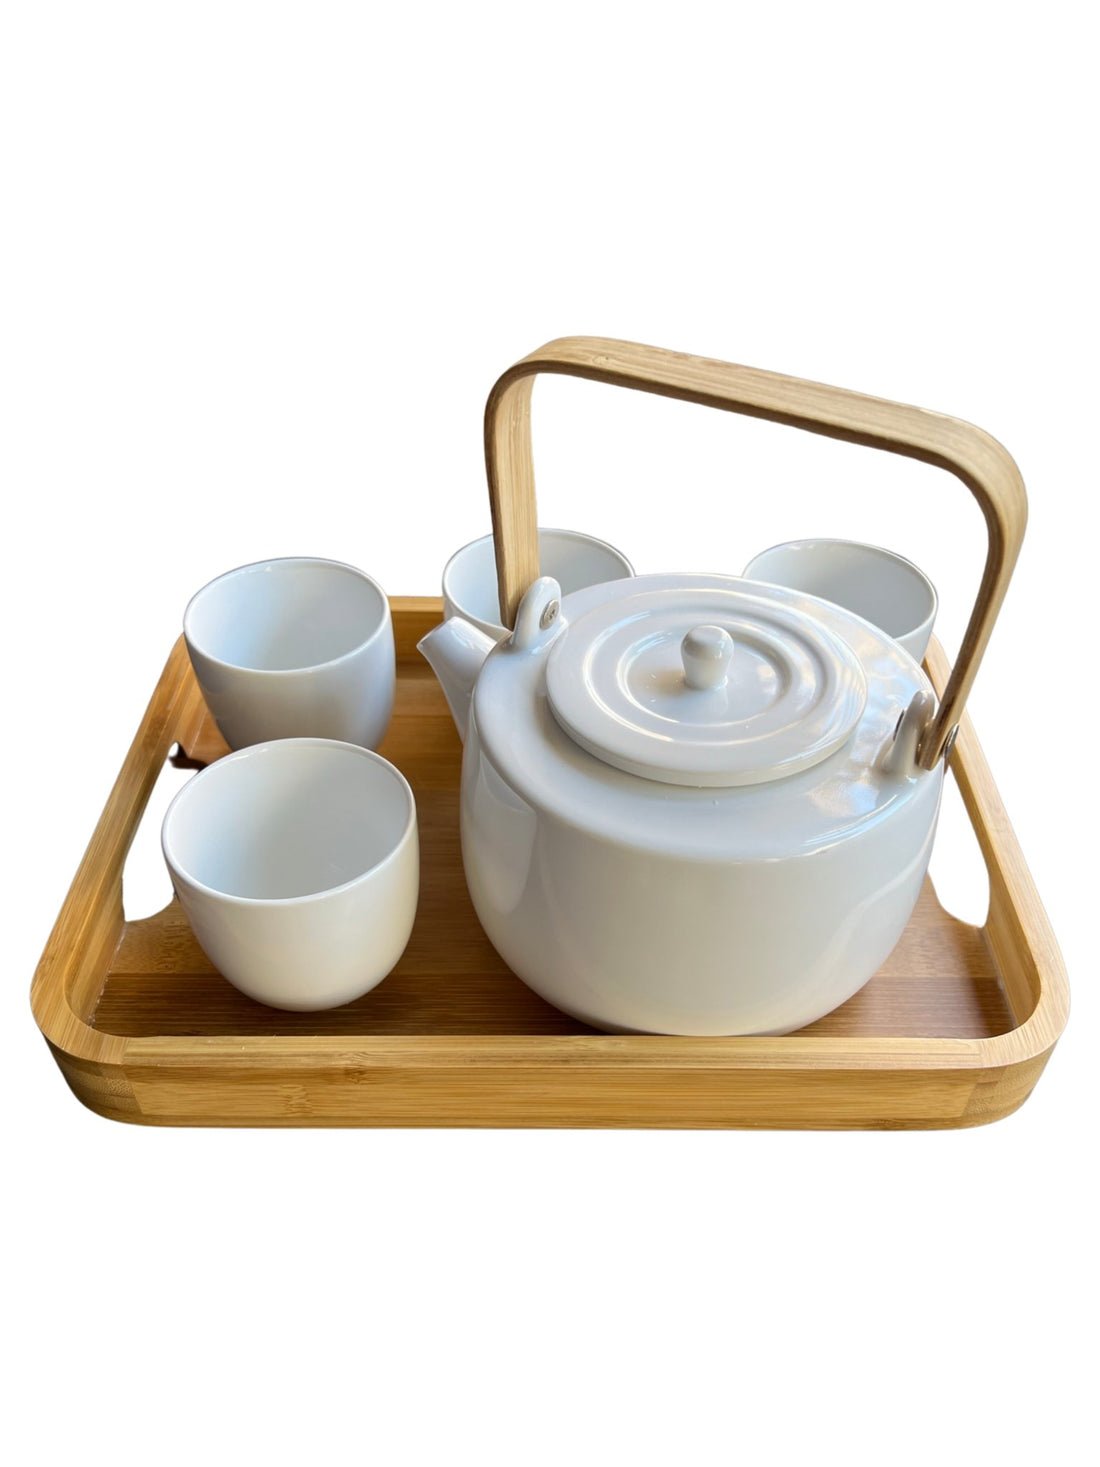 6 Essential Tea Accessories